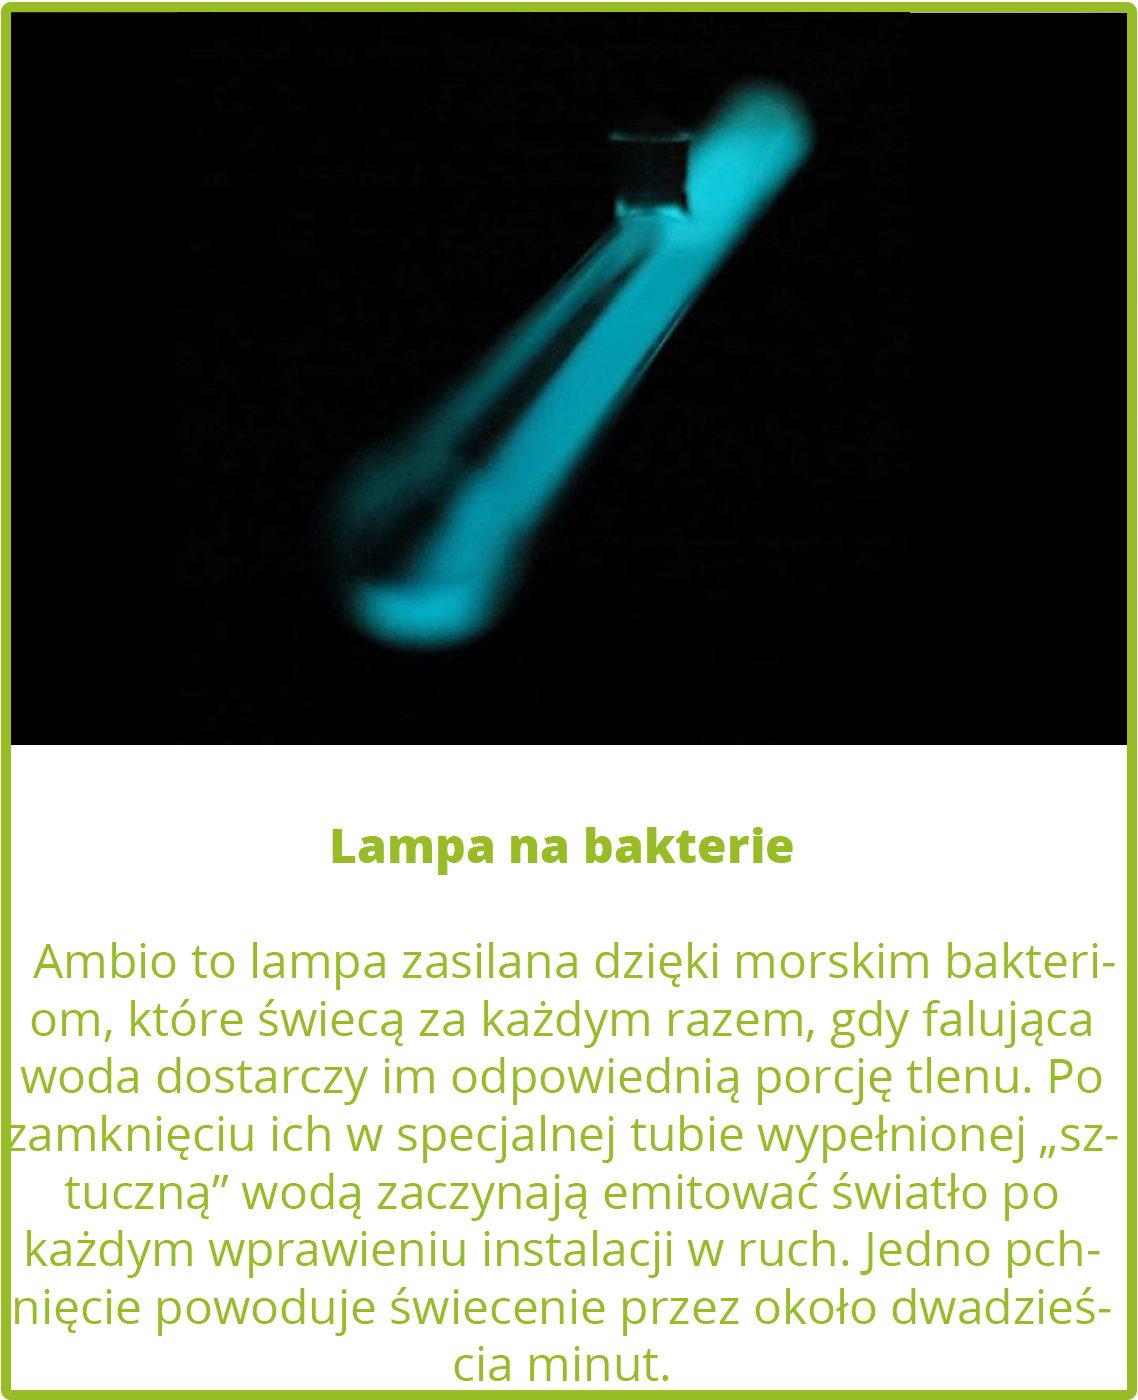 Lampa na bakterie